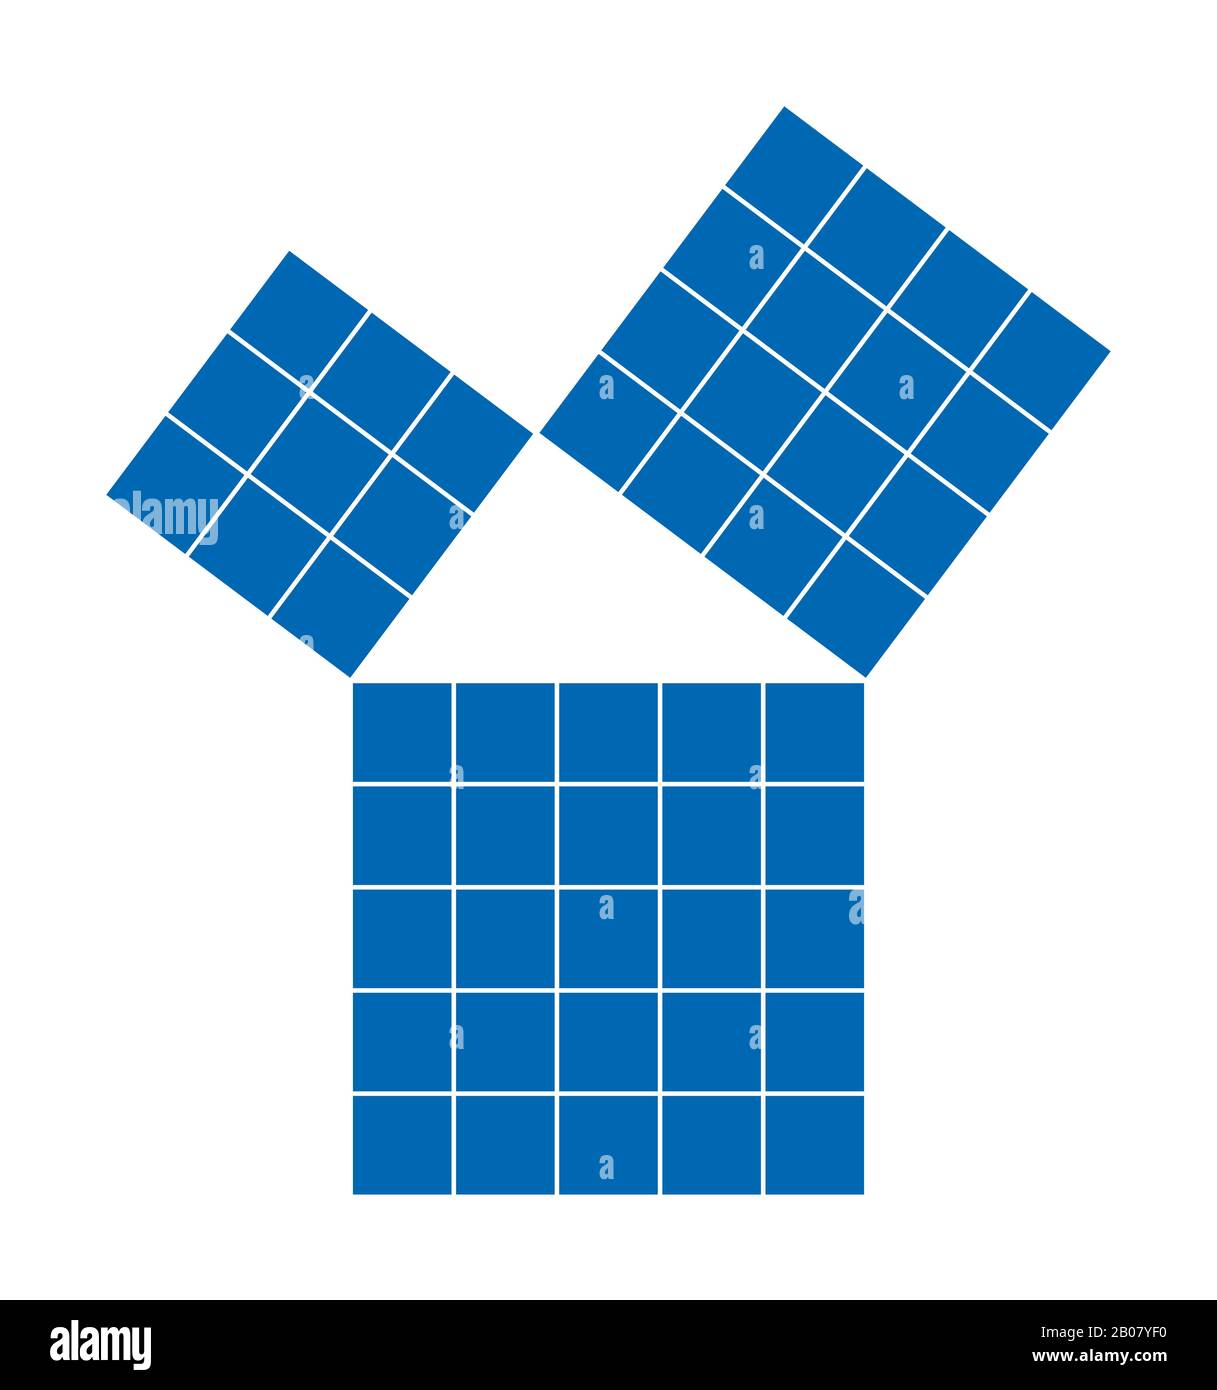 Pythagoreisches Theorem mit unterteilten blauen Quadraten. Satz des Pythagoras. Verhältnis der Seiten des rechten Dreiecks. Stockfoto